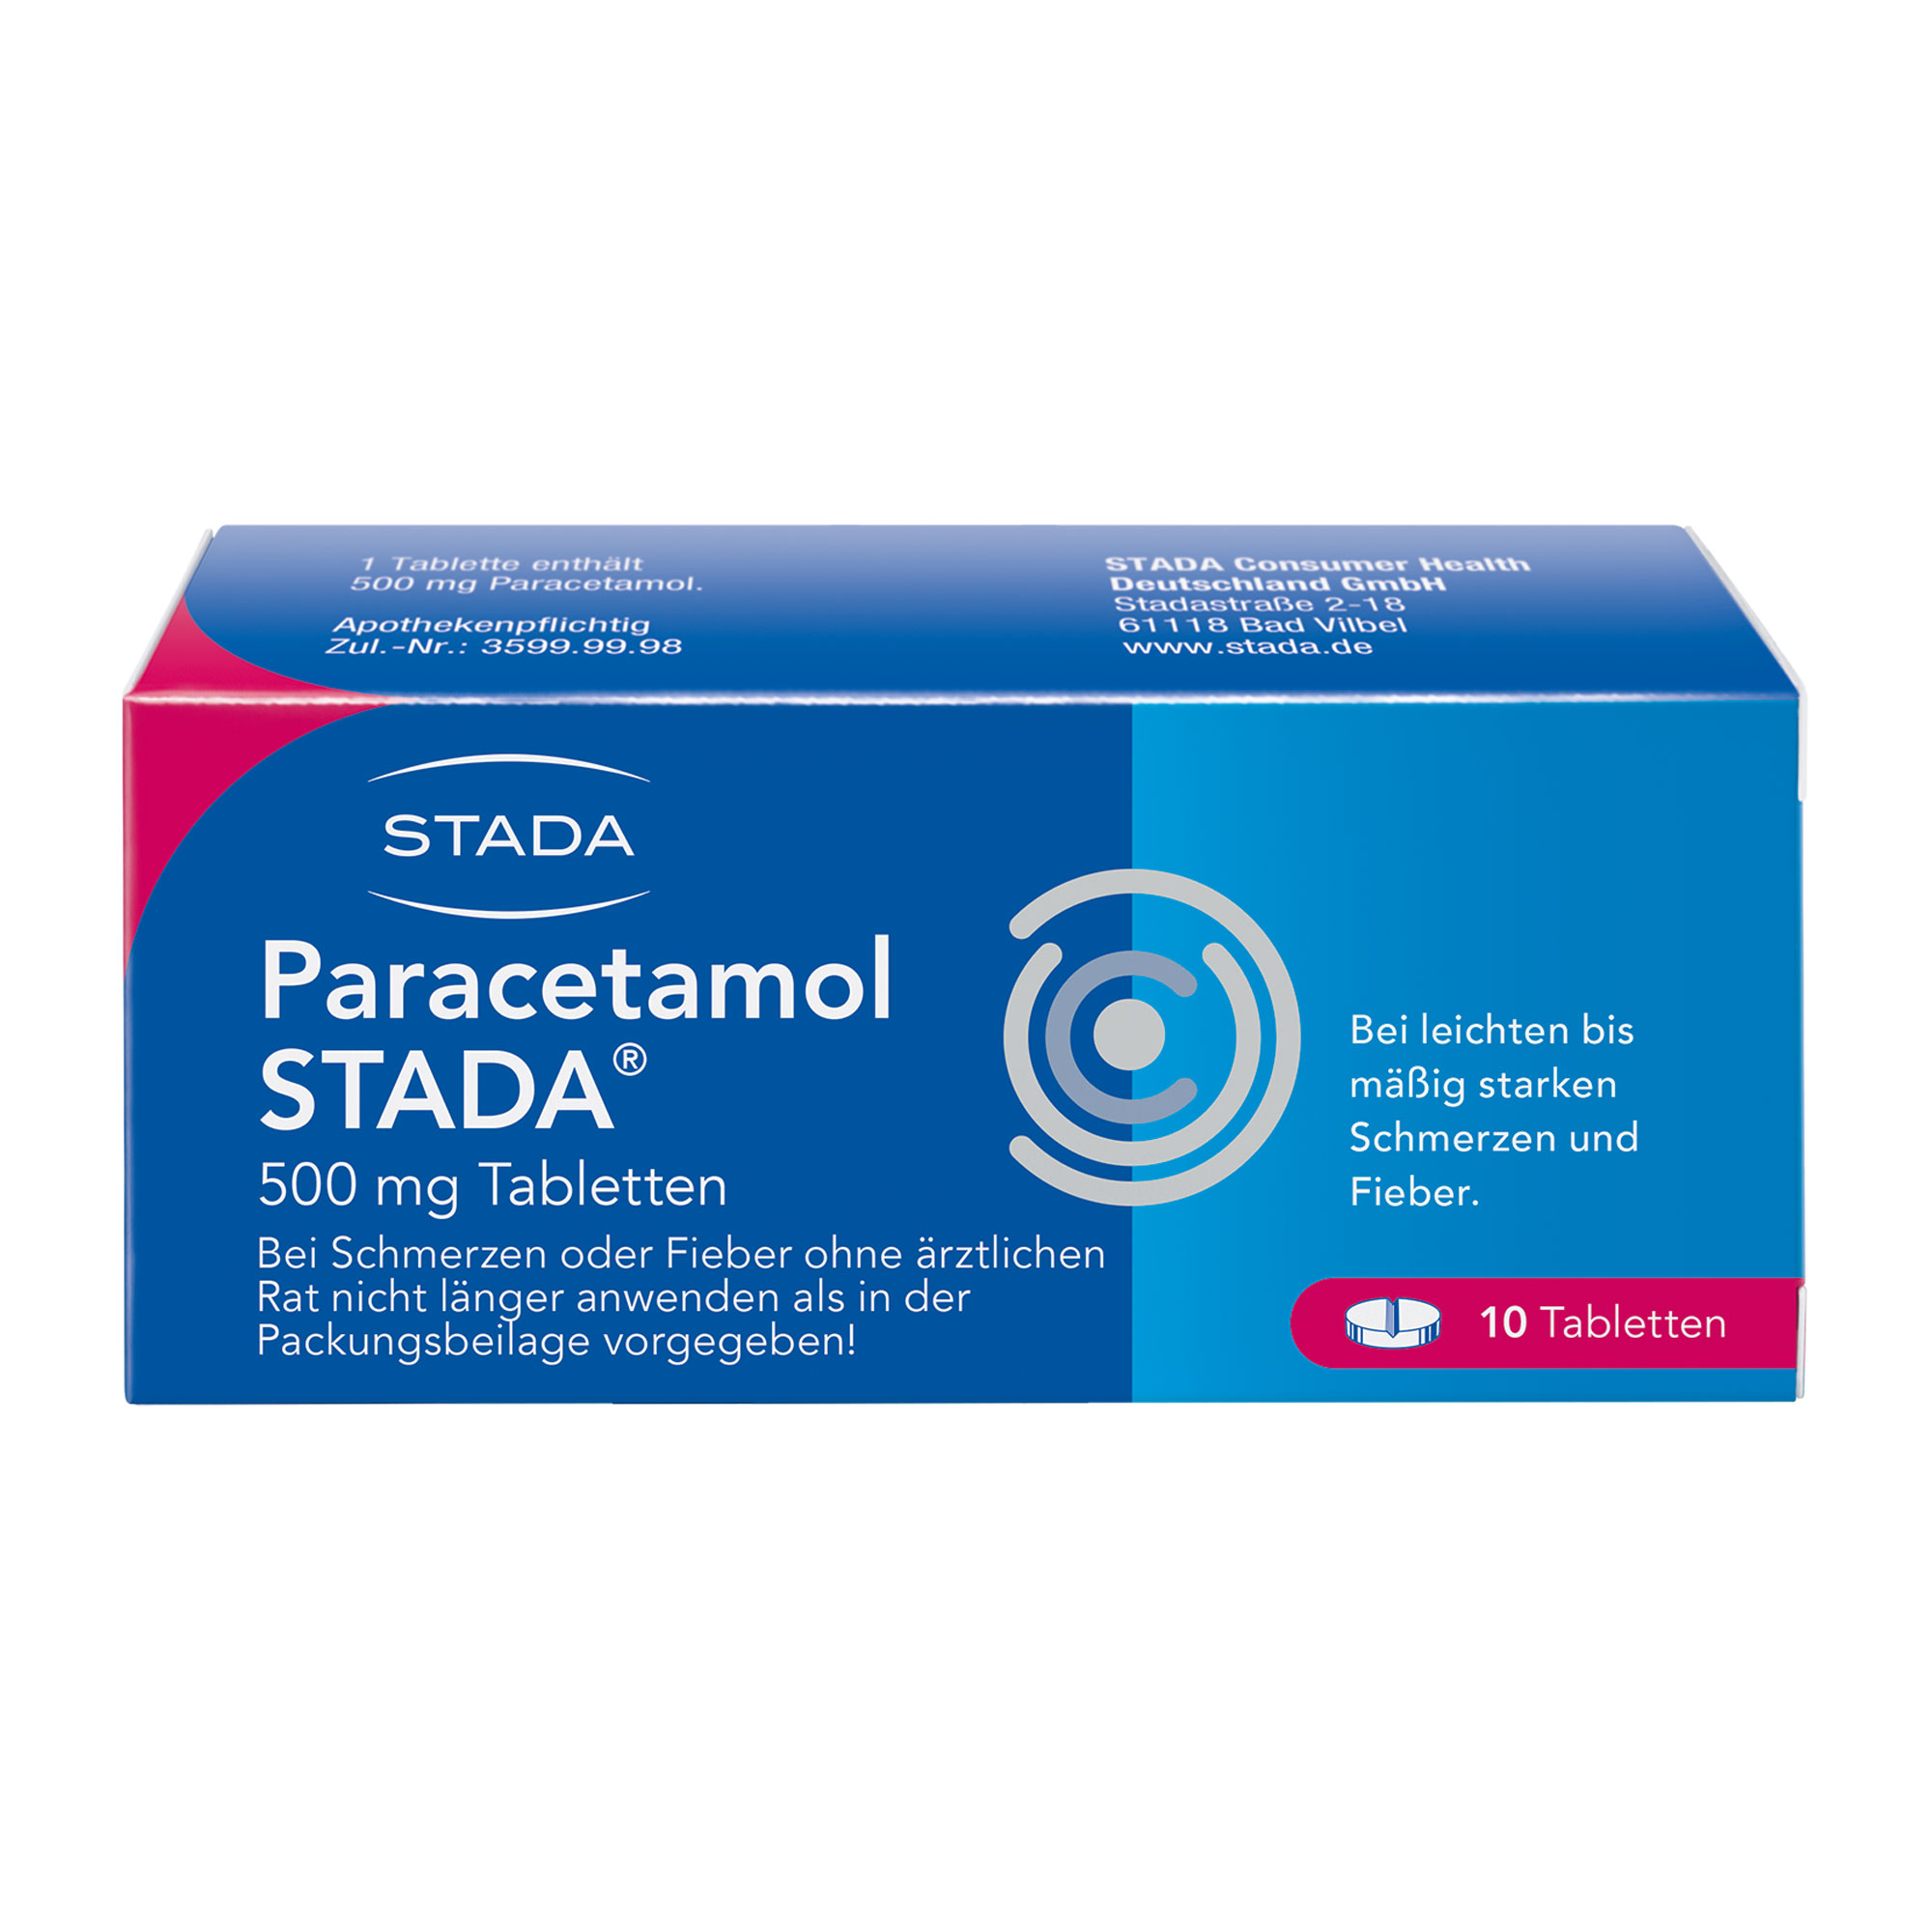 Paracetamol STADA 500 mg Tabletten